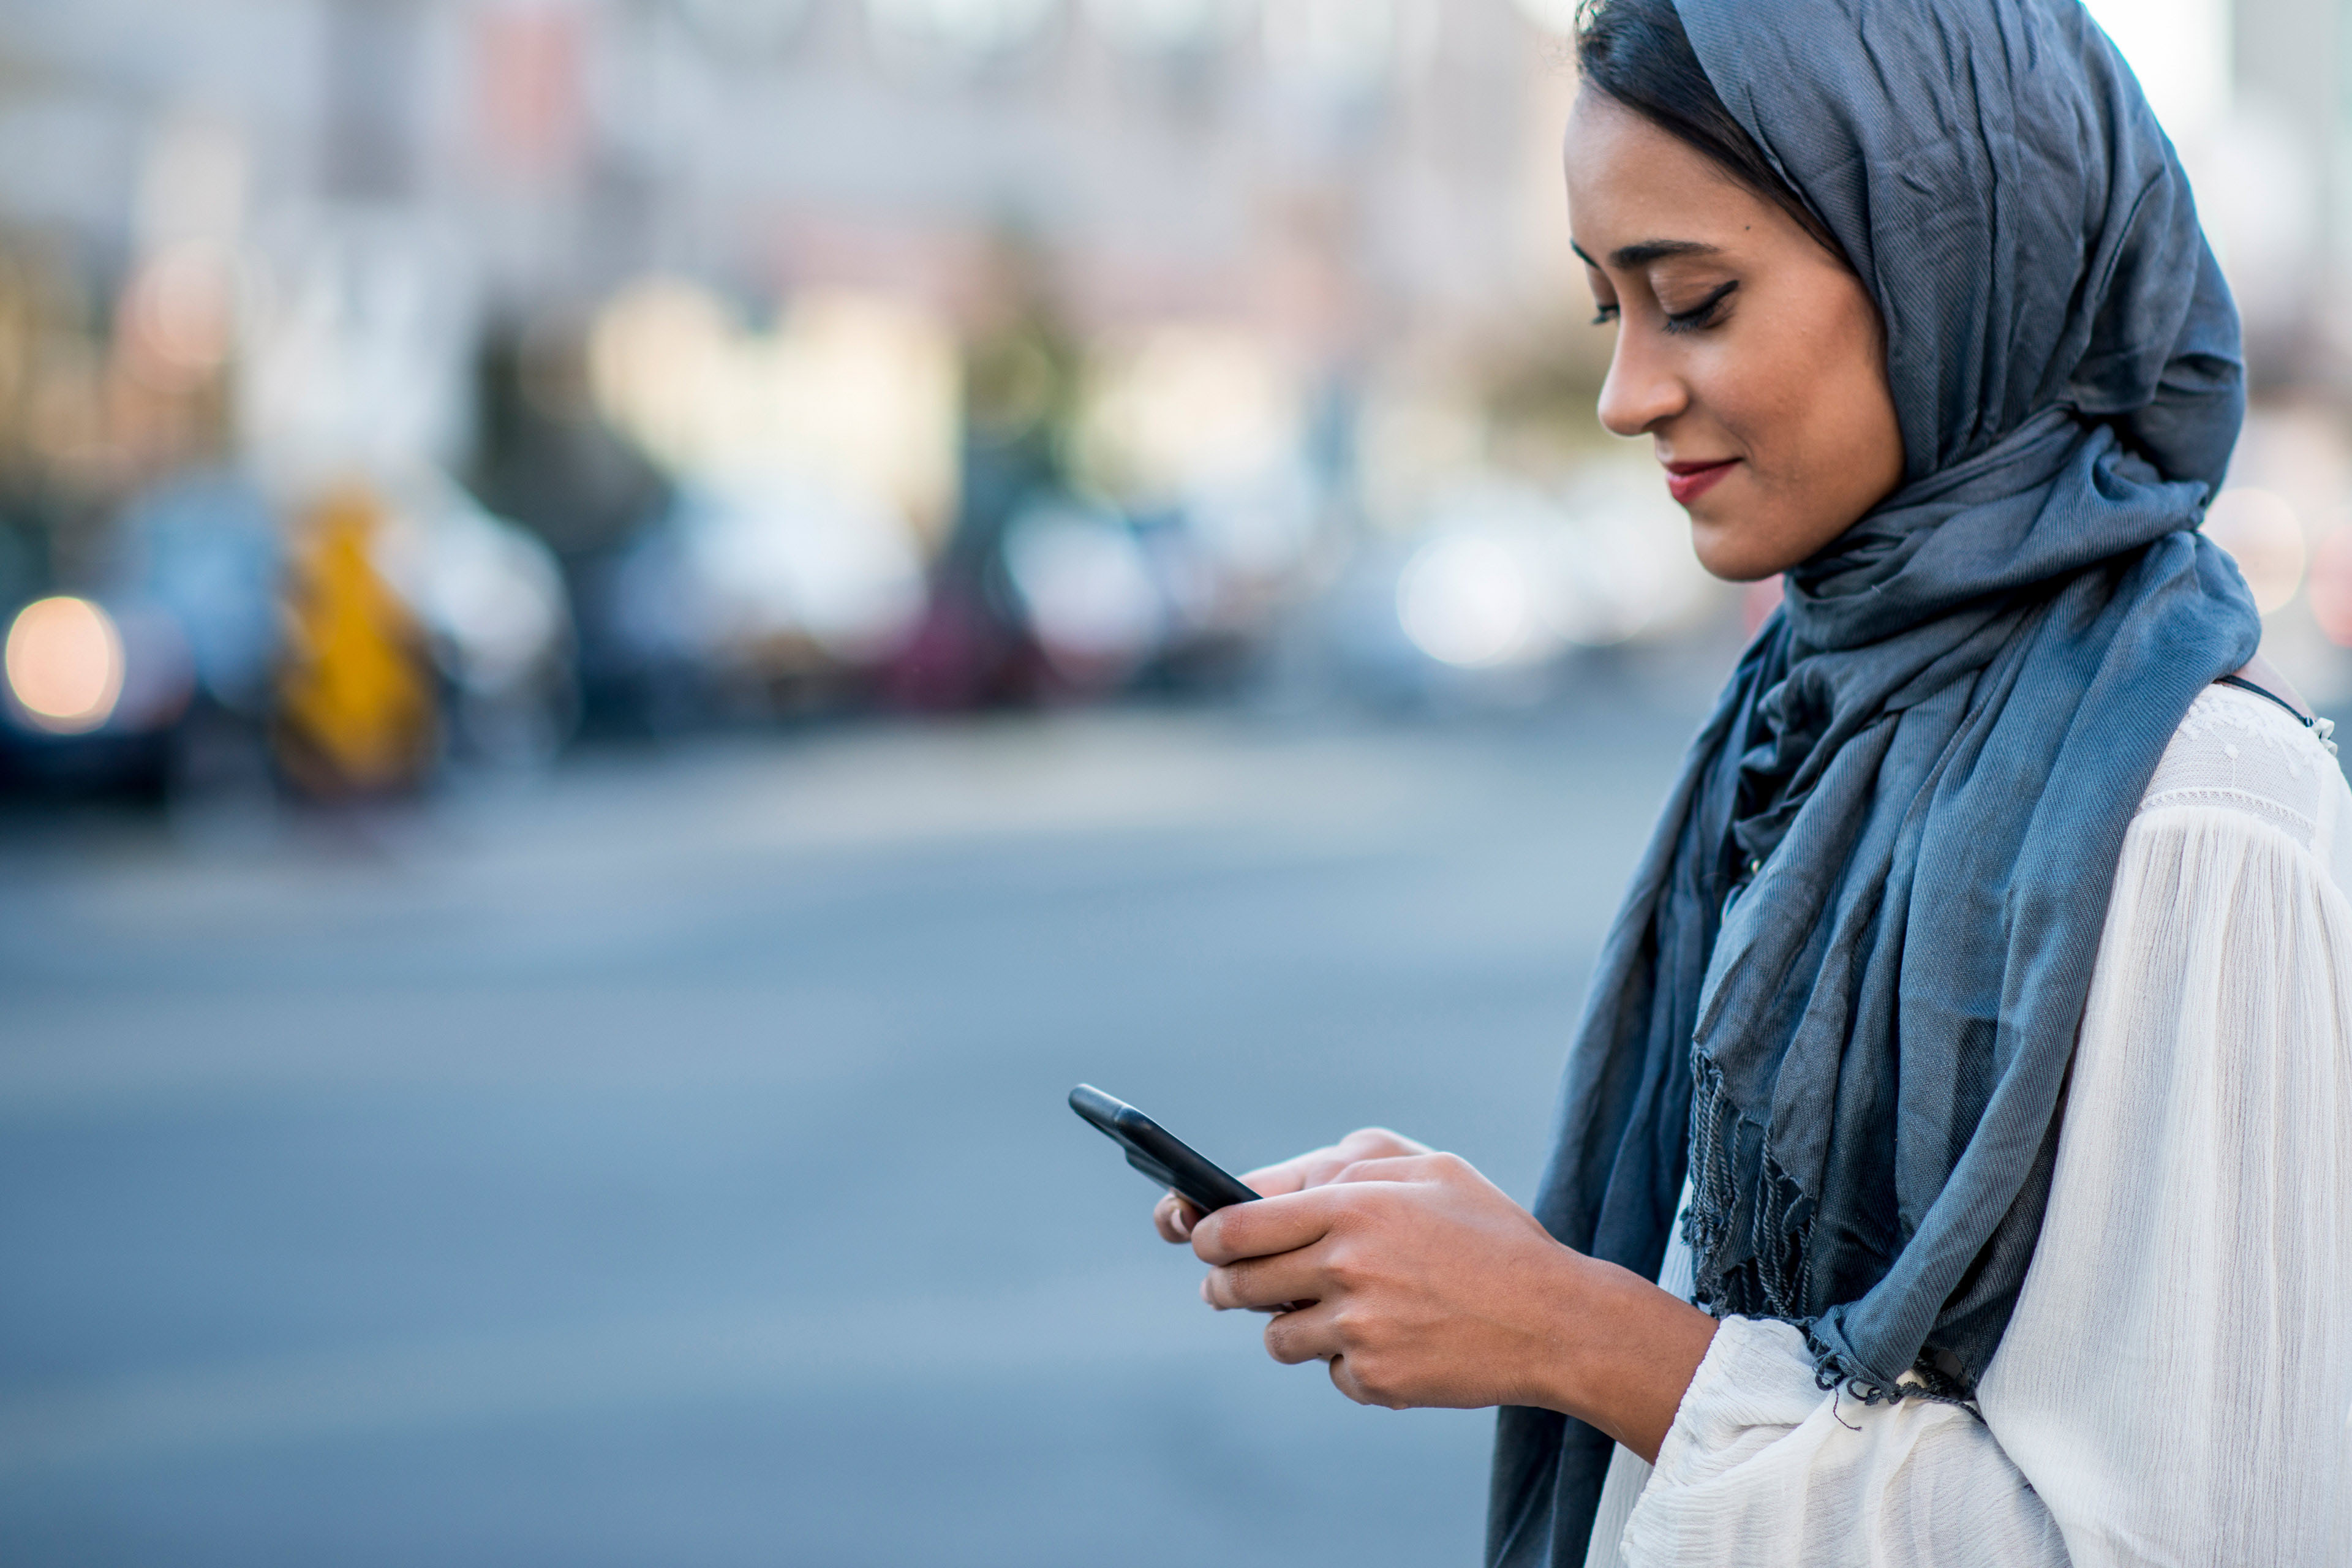 Femme portant un voile en train de consulter son smartphone